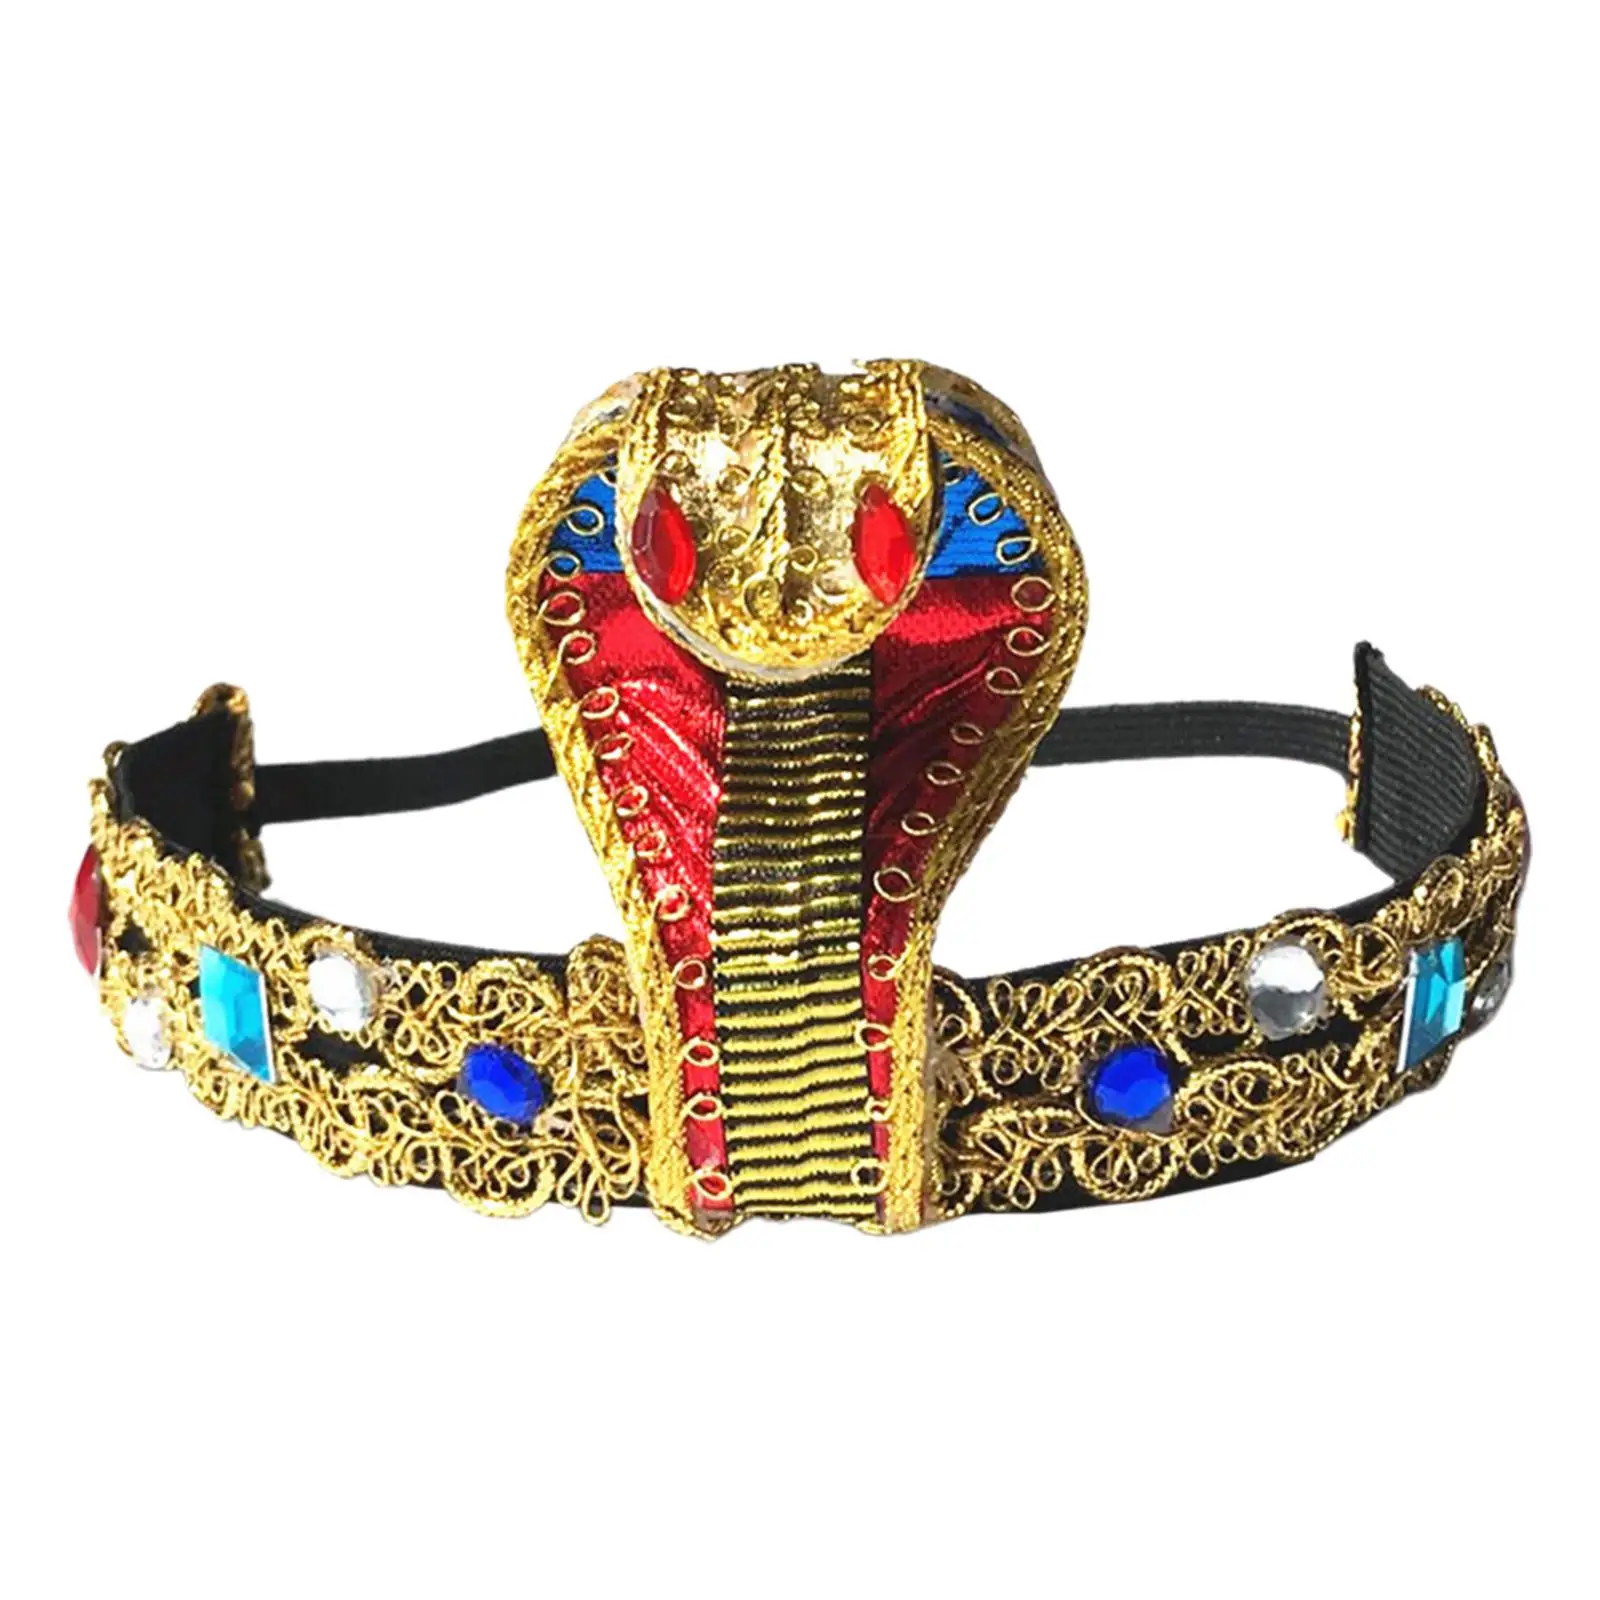 Novely Egypt Queen Headdress Crown Stylish Egyptian Theme Costume Snake Headband for Party Props Wedding Festival Women Girls